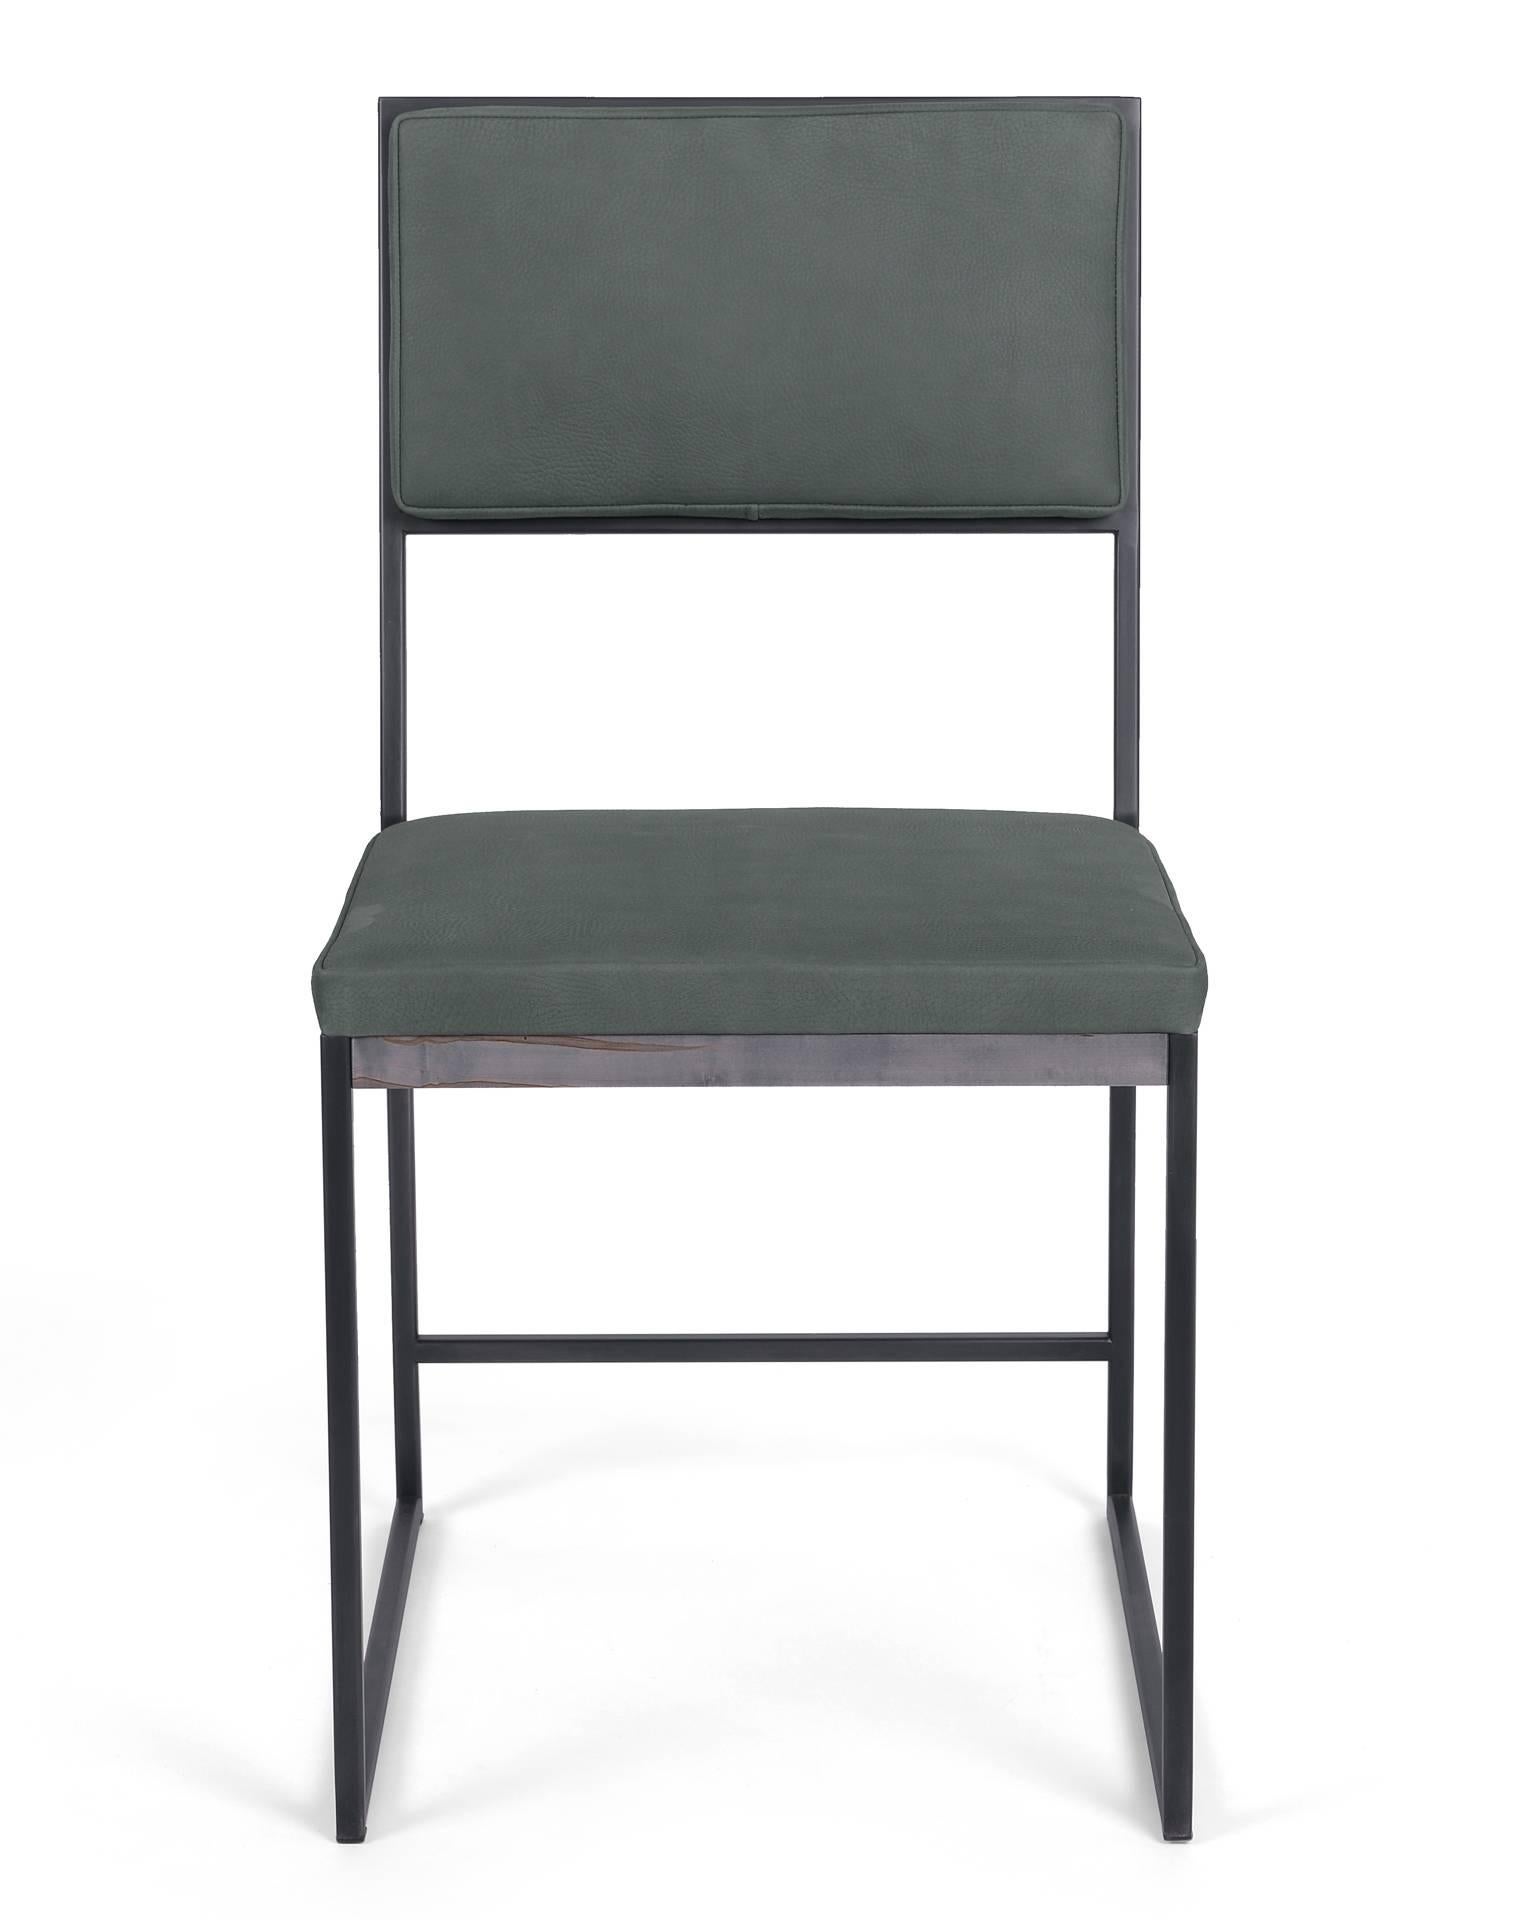 La chaise de salle à manger Hendrick, élégante et moderne, présente des lignes épurées et un siège et un dossier en cuir luxueux, ajoutant confort et sophistication à toute pièce. Une garniture en érable ambrosia oxydé complète le cadre en acier